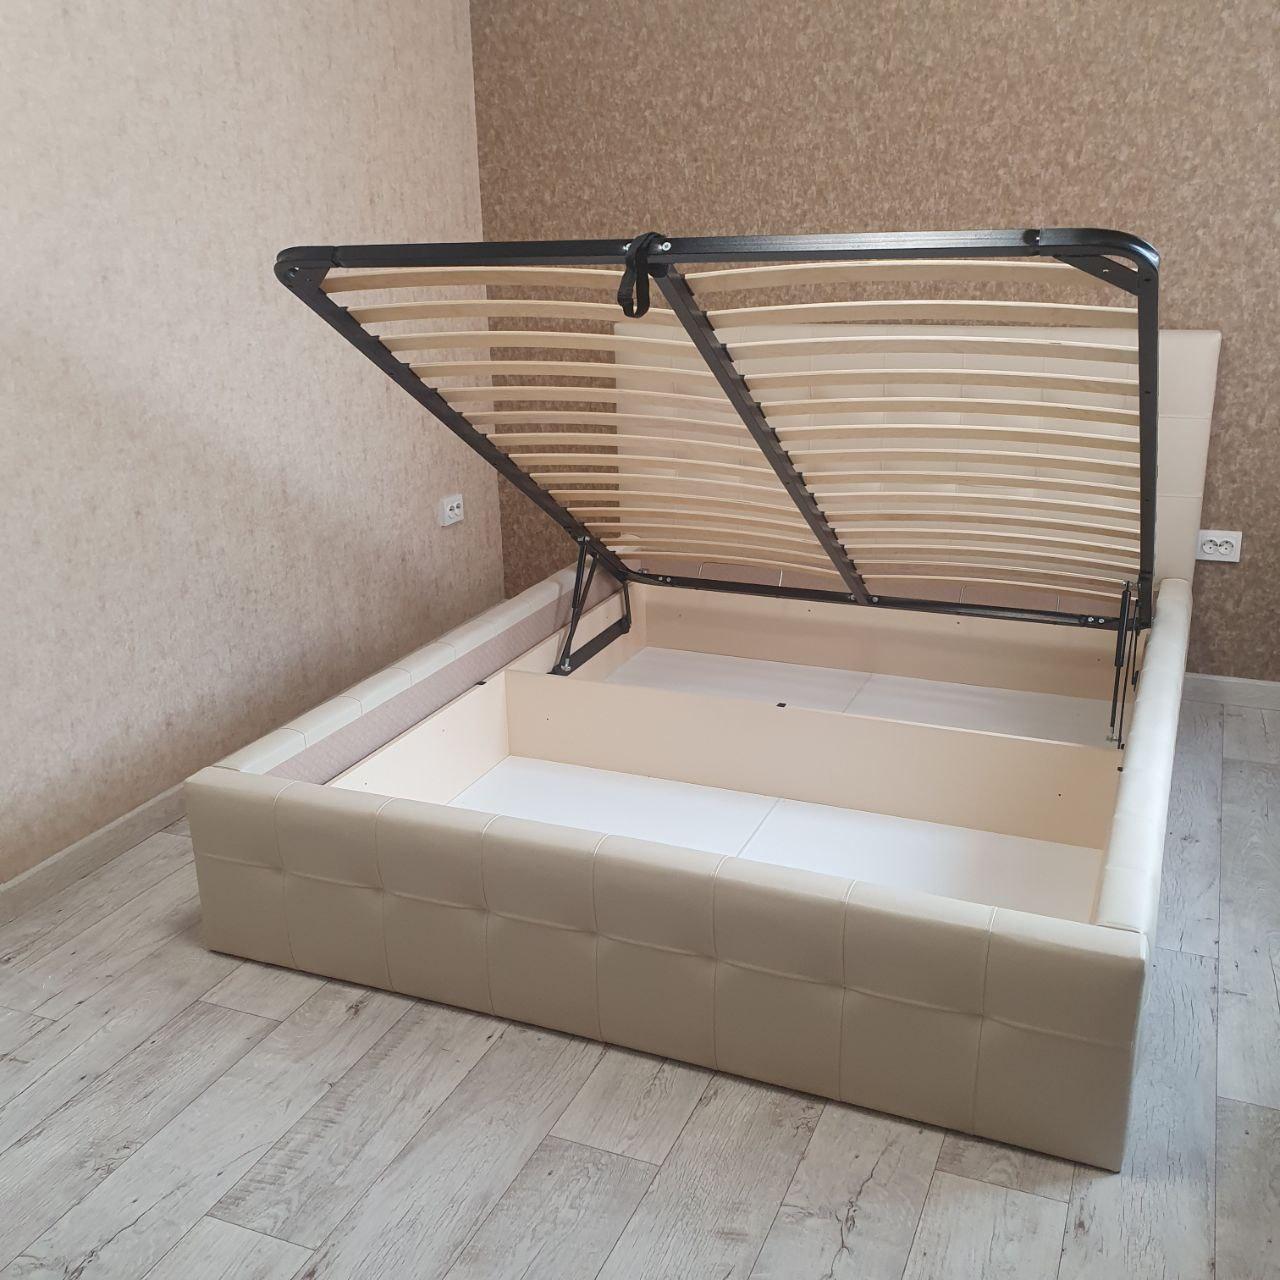 Полутораспальная кровать "Bella-Кристалл" 120 х 200 с ортопедическим основанием цвет sancho 2203